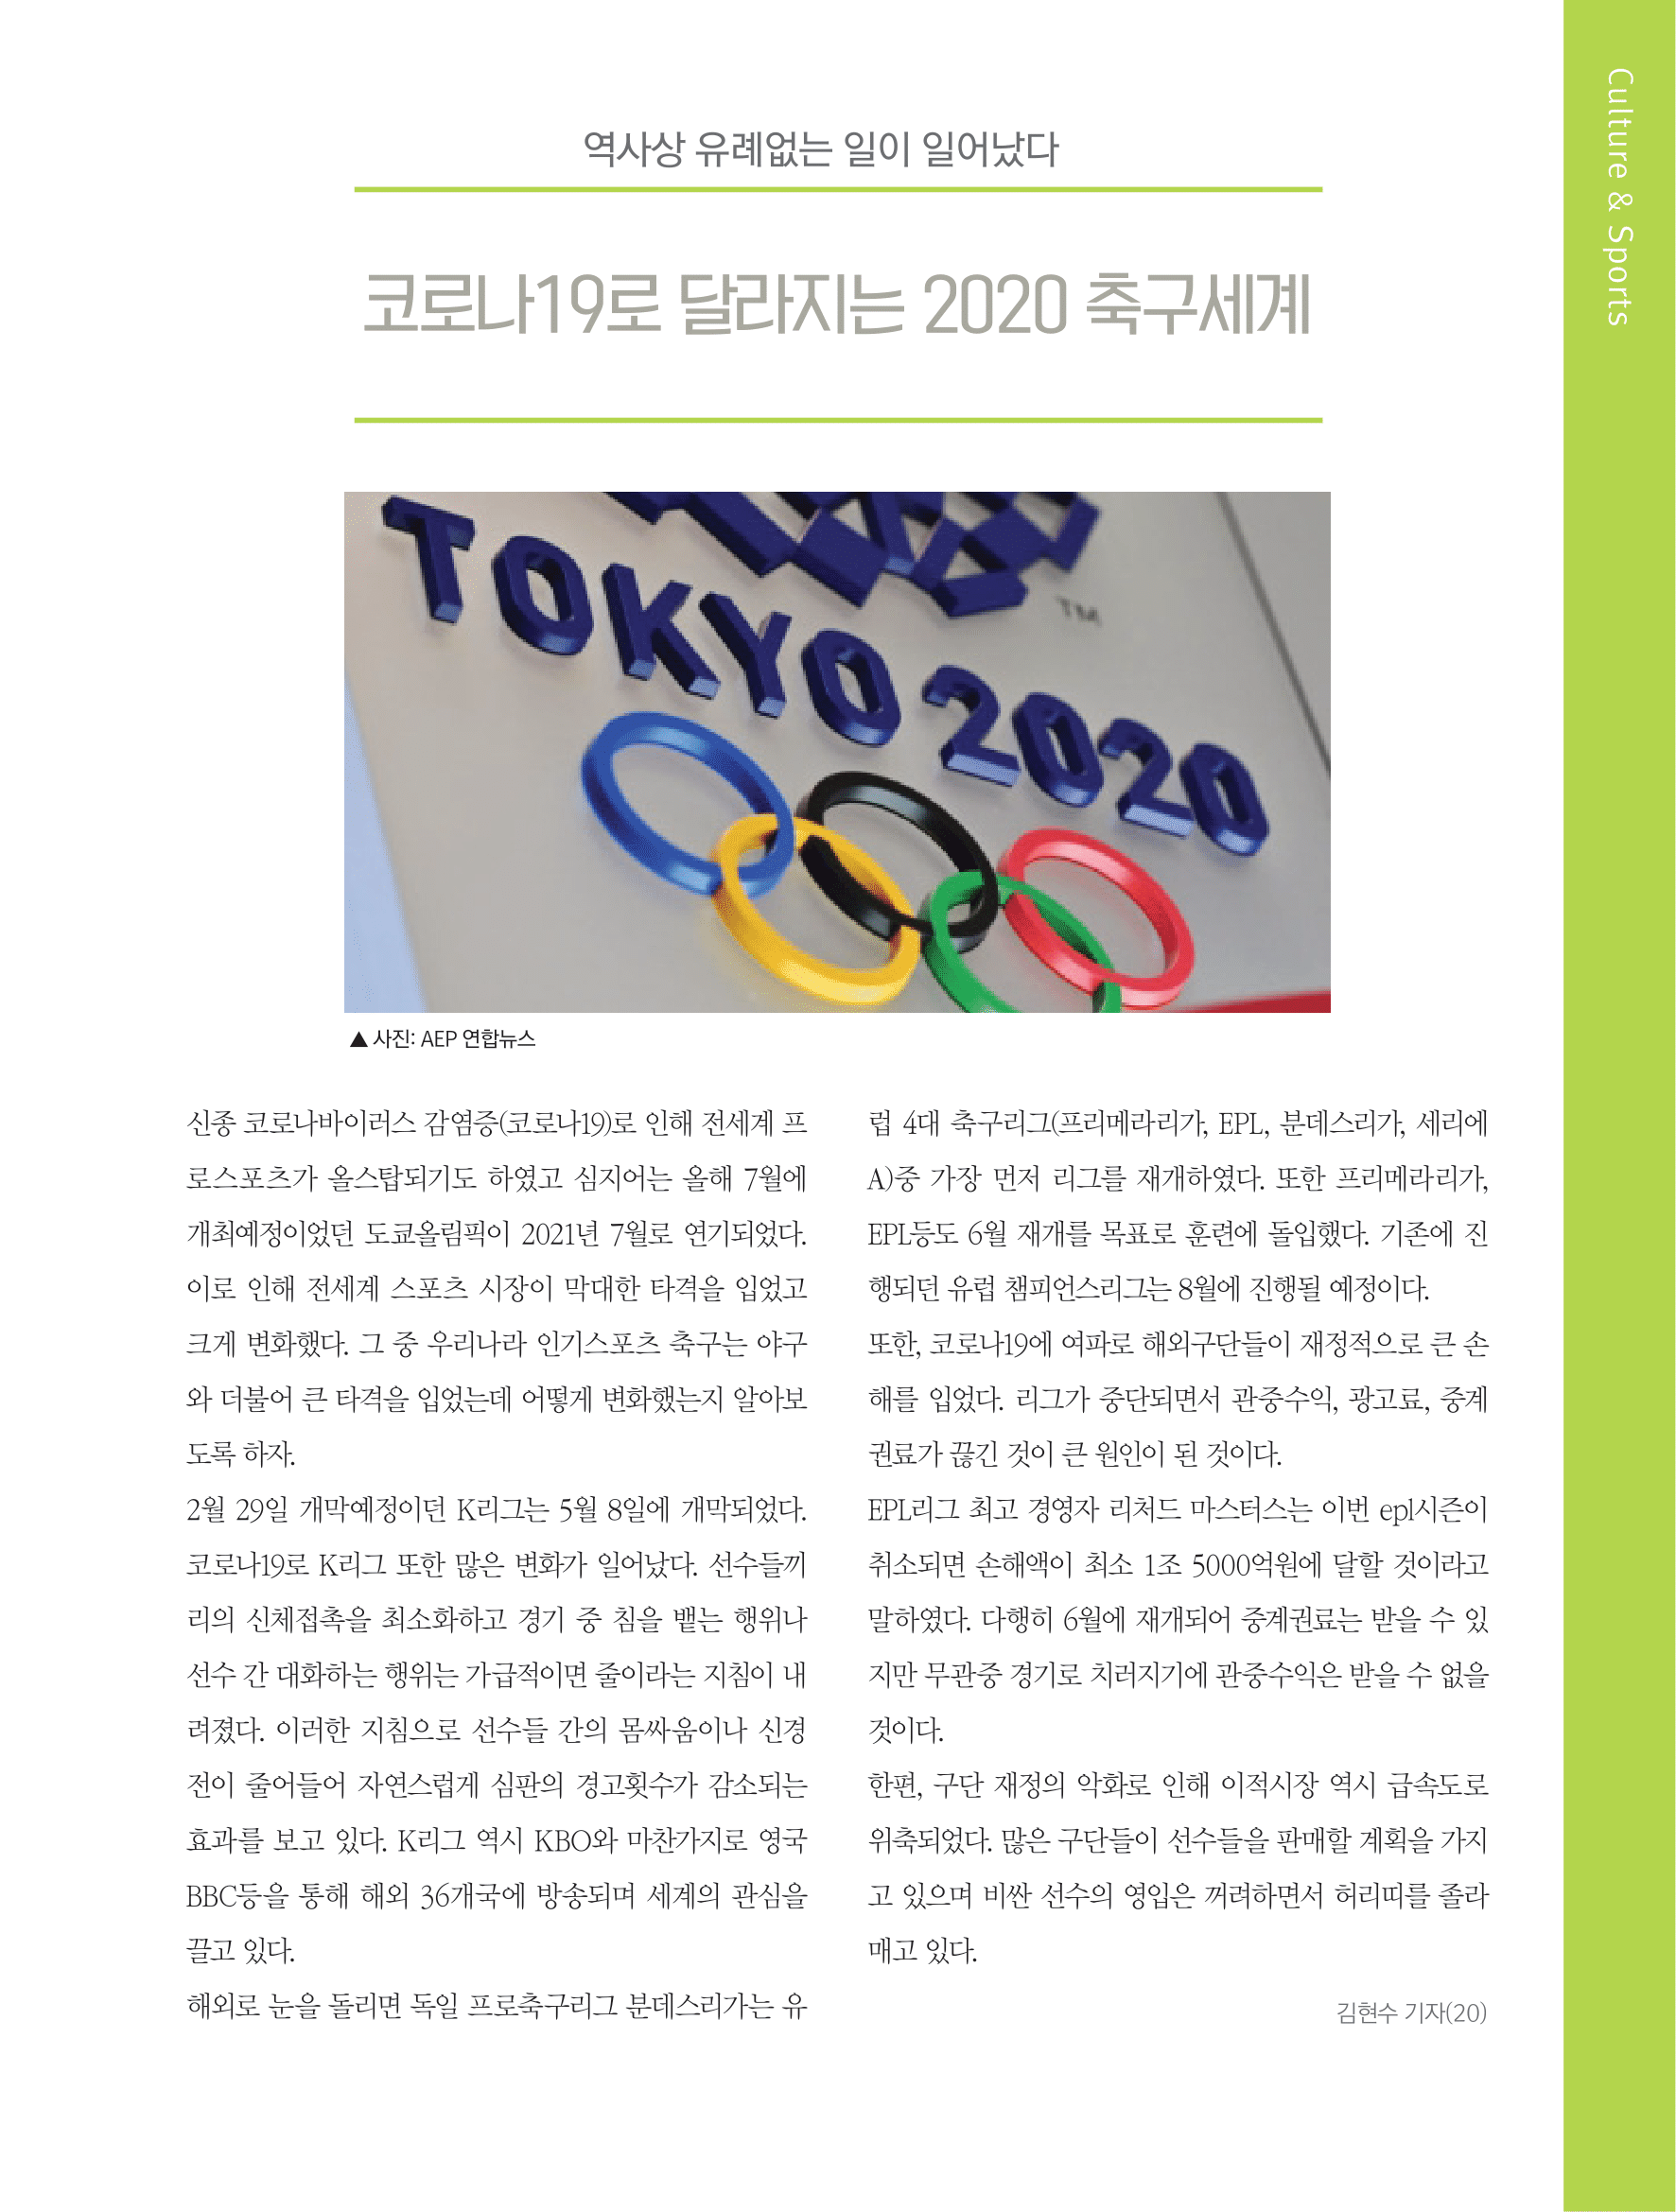 뜻새김 신문 75호 21